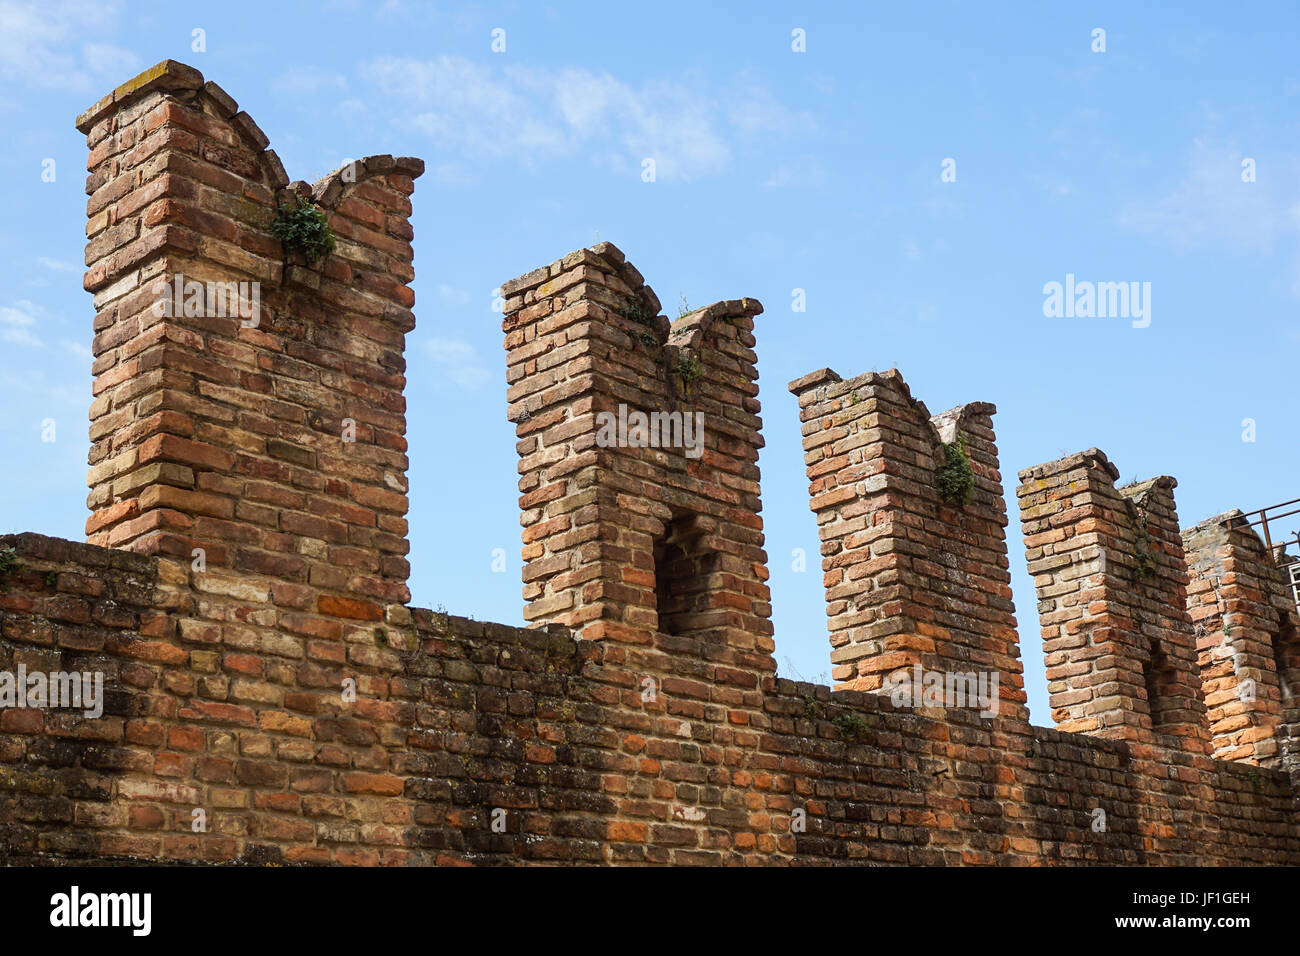 Detalle de una antigua muralla del castillo medieval. Foto de stock